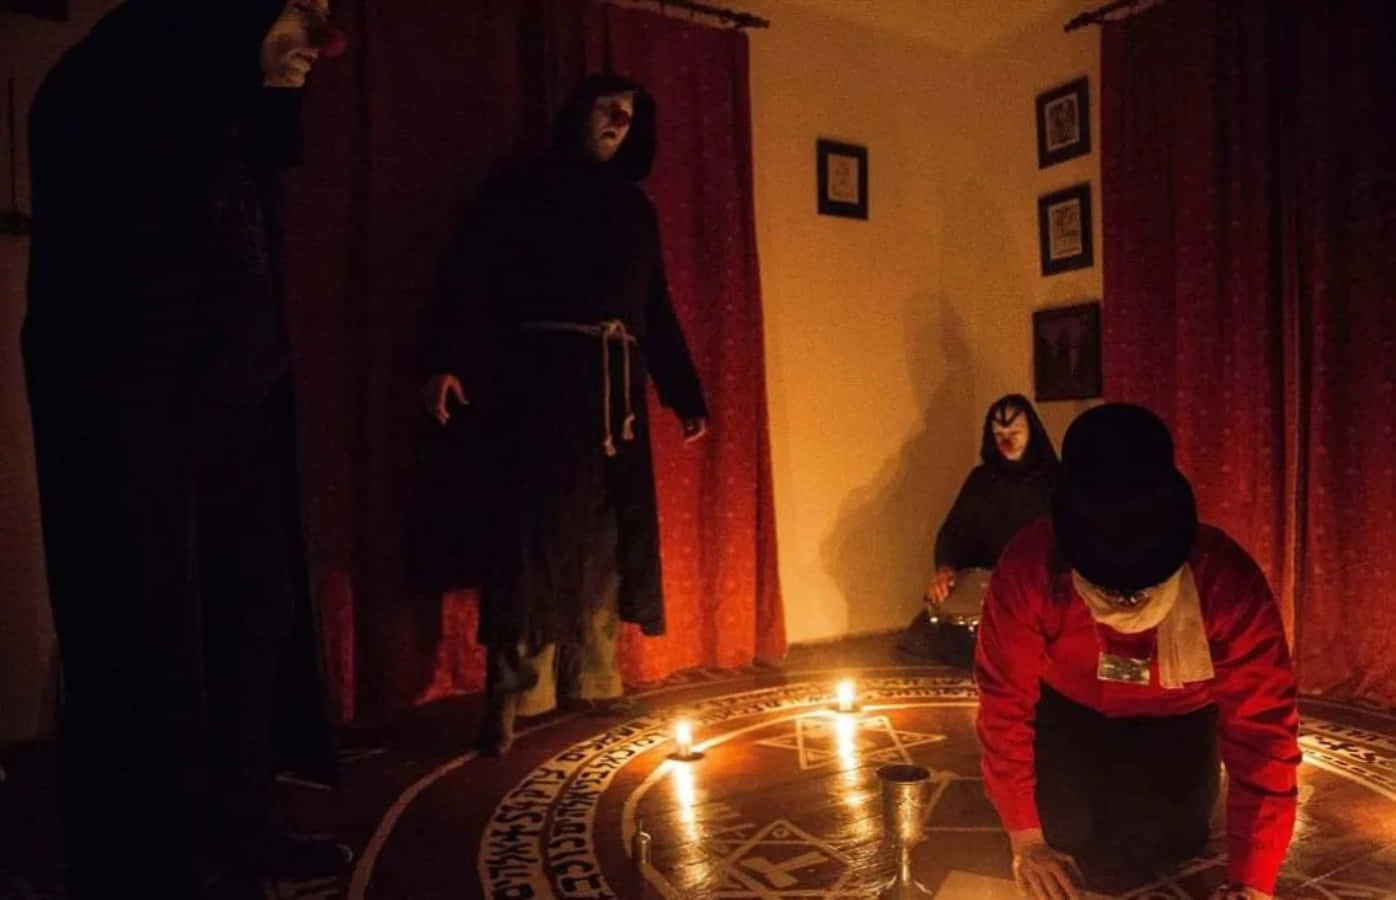 Einegruppe Von Personen In Schwarzen Gewändern Steht Um Eine Kerze Herum.